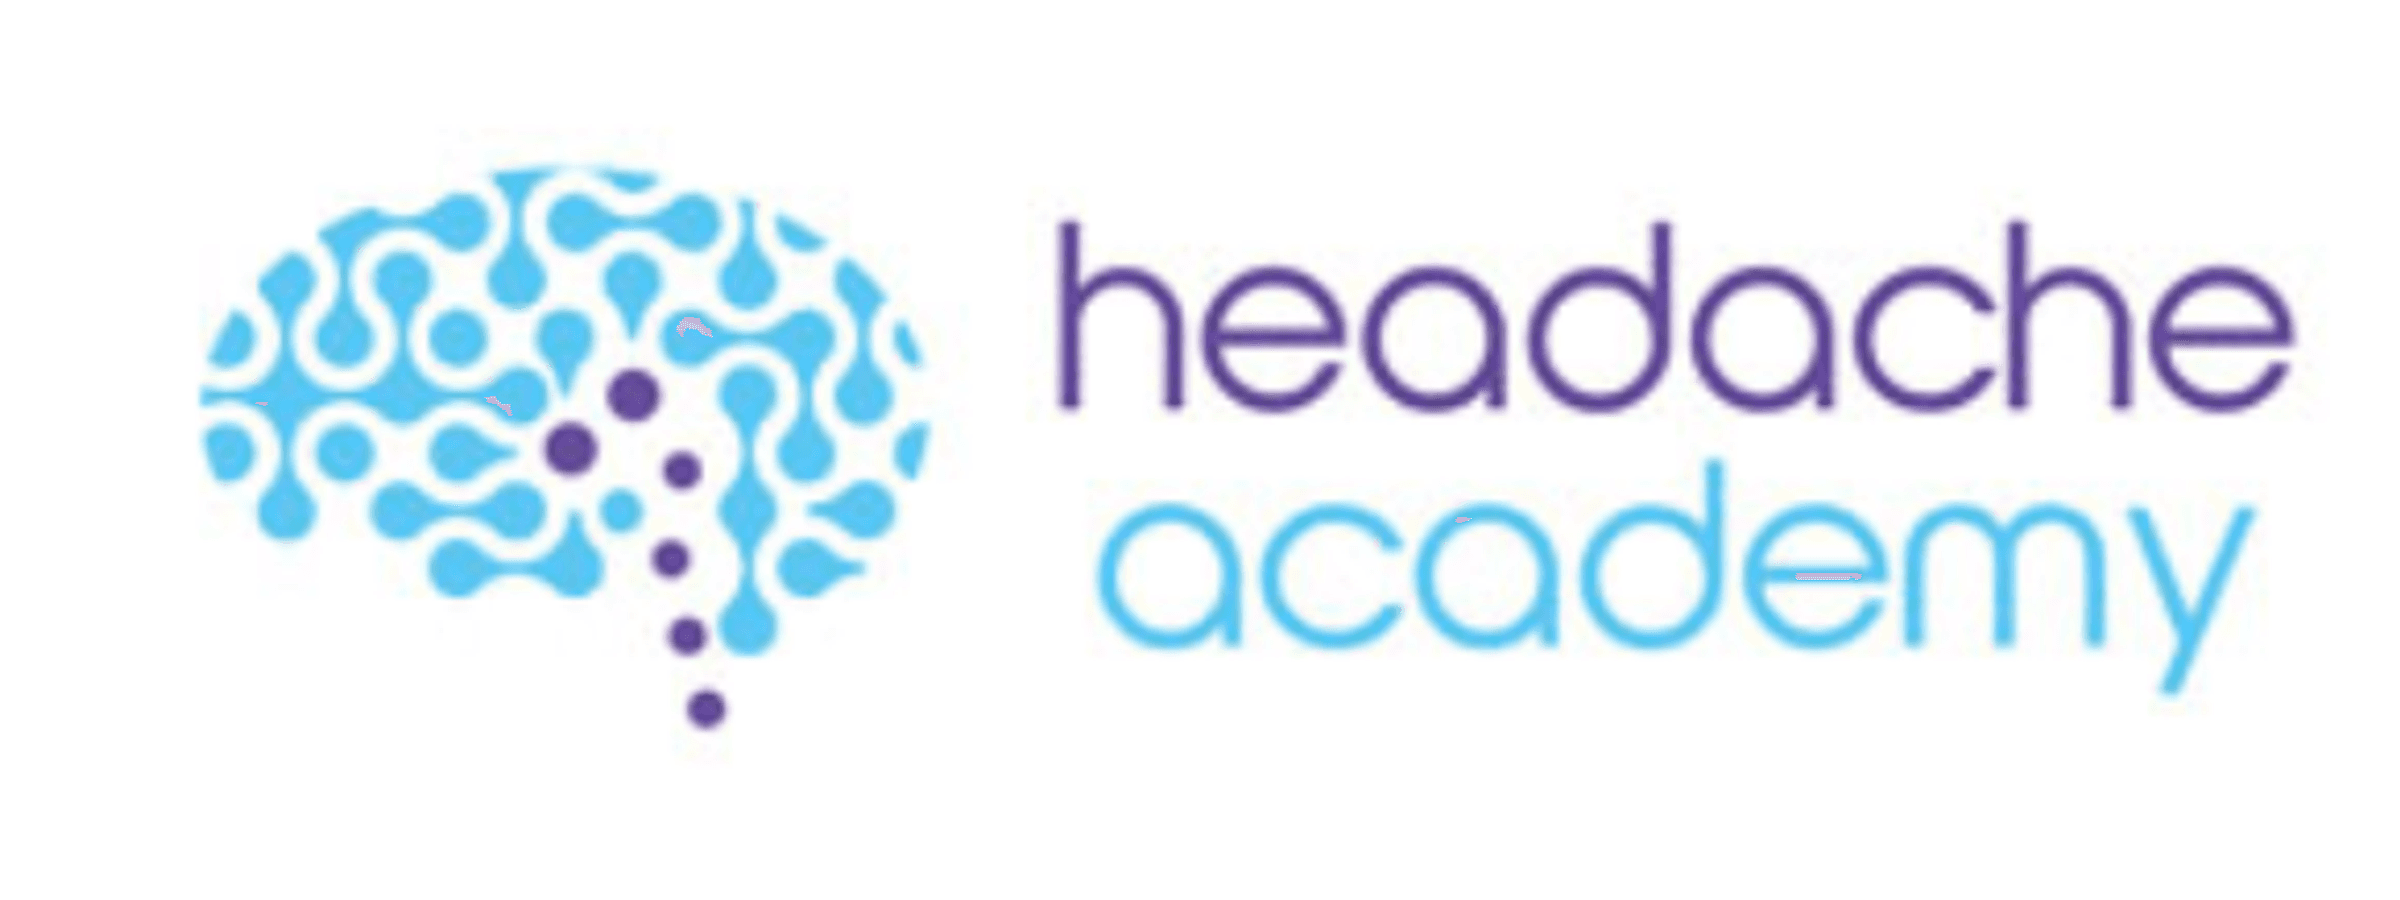 Logo for the headache academy.